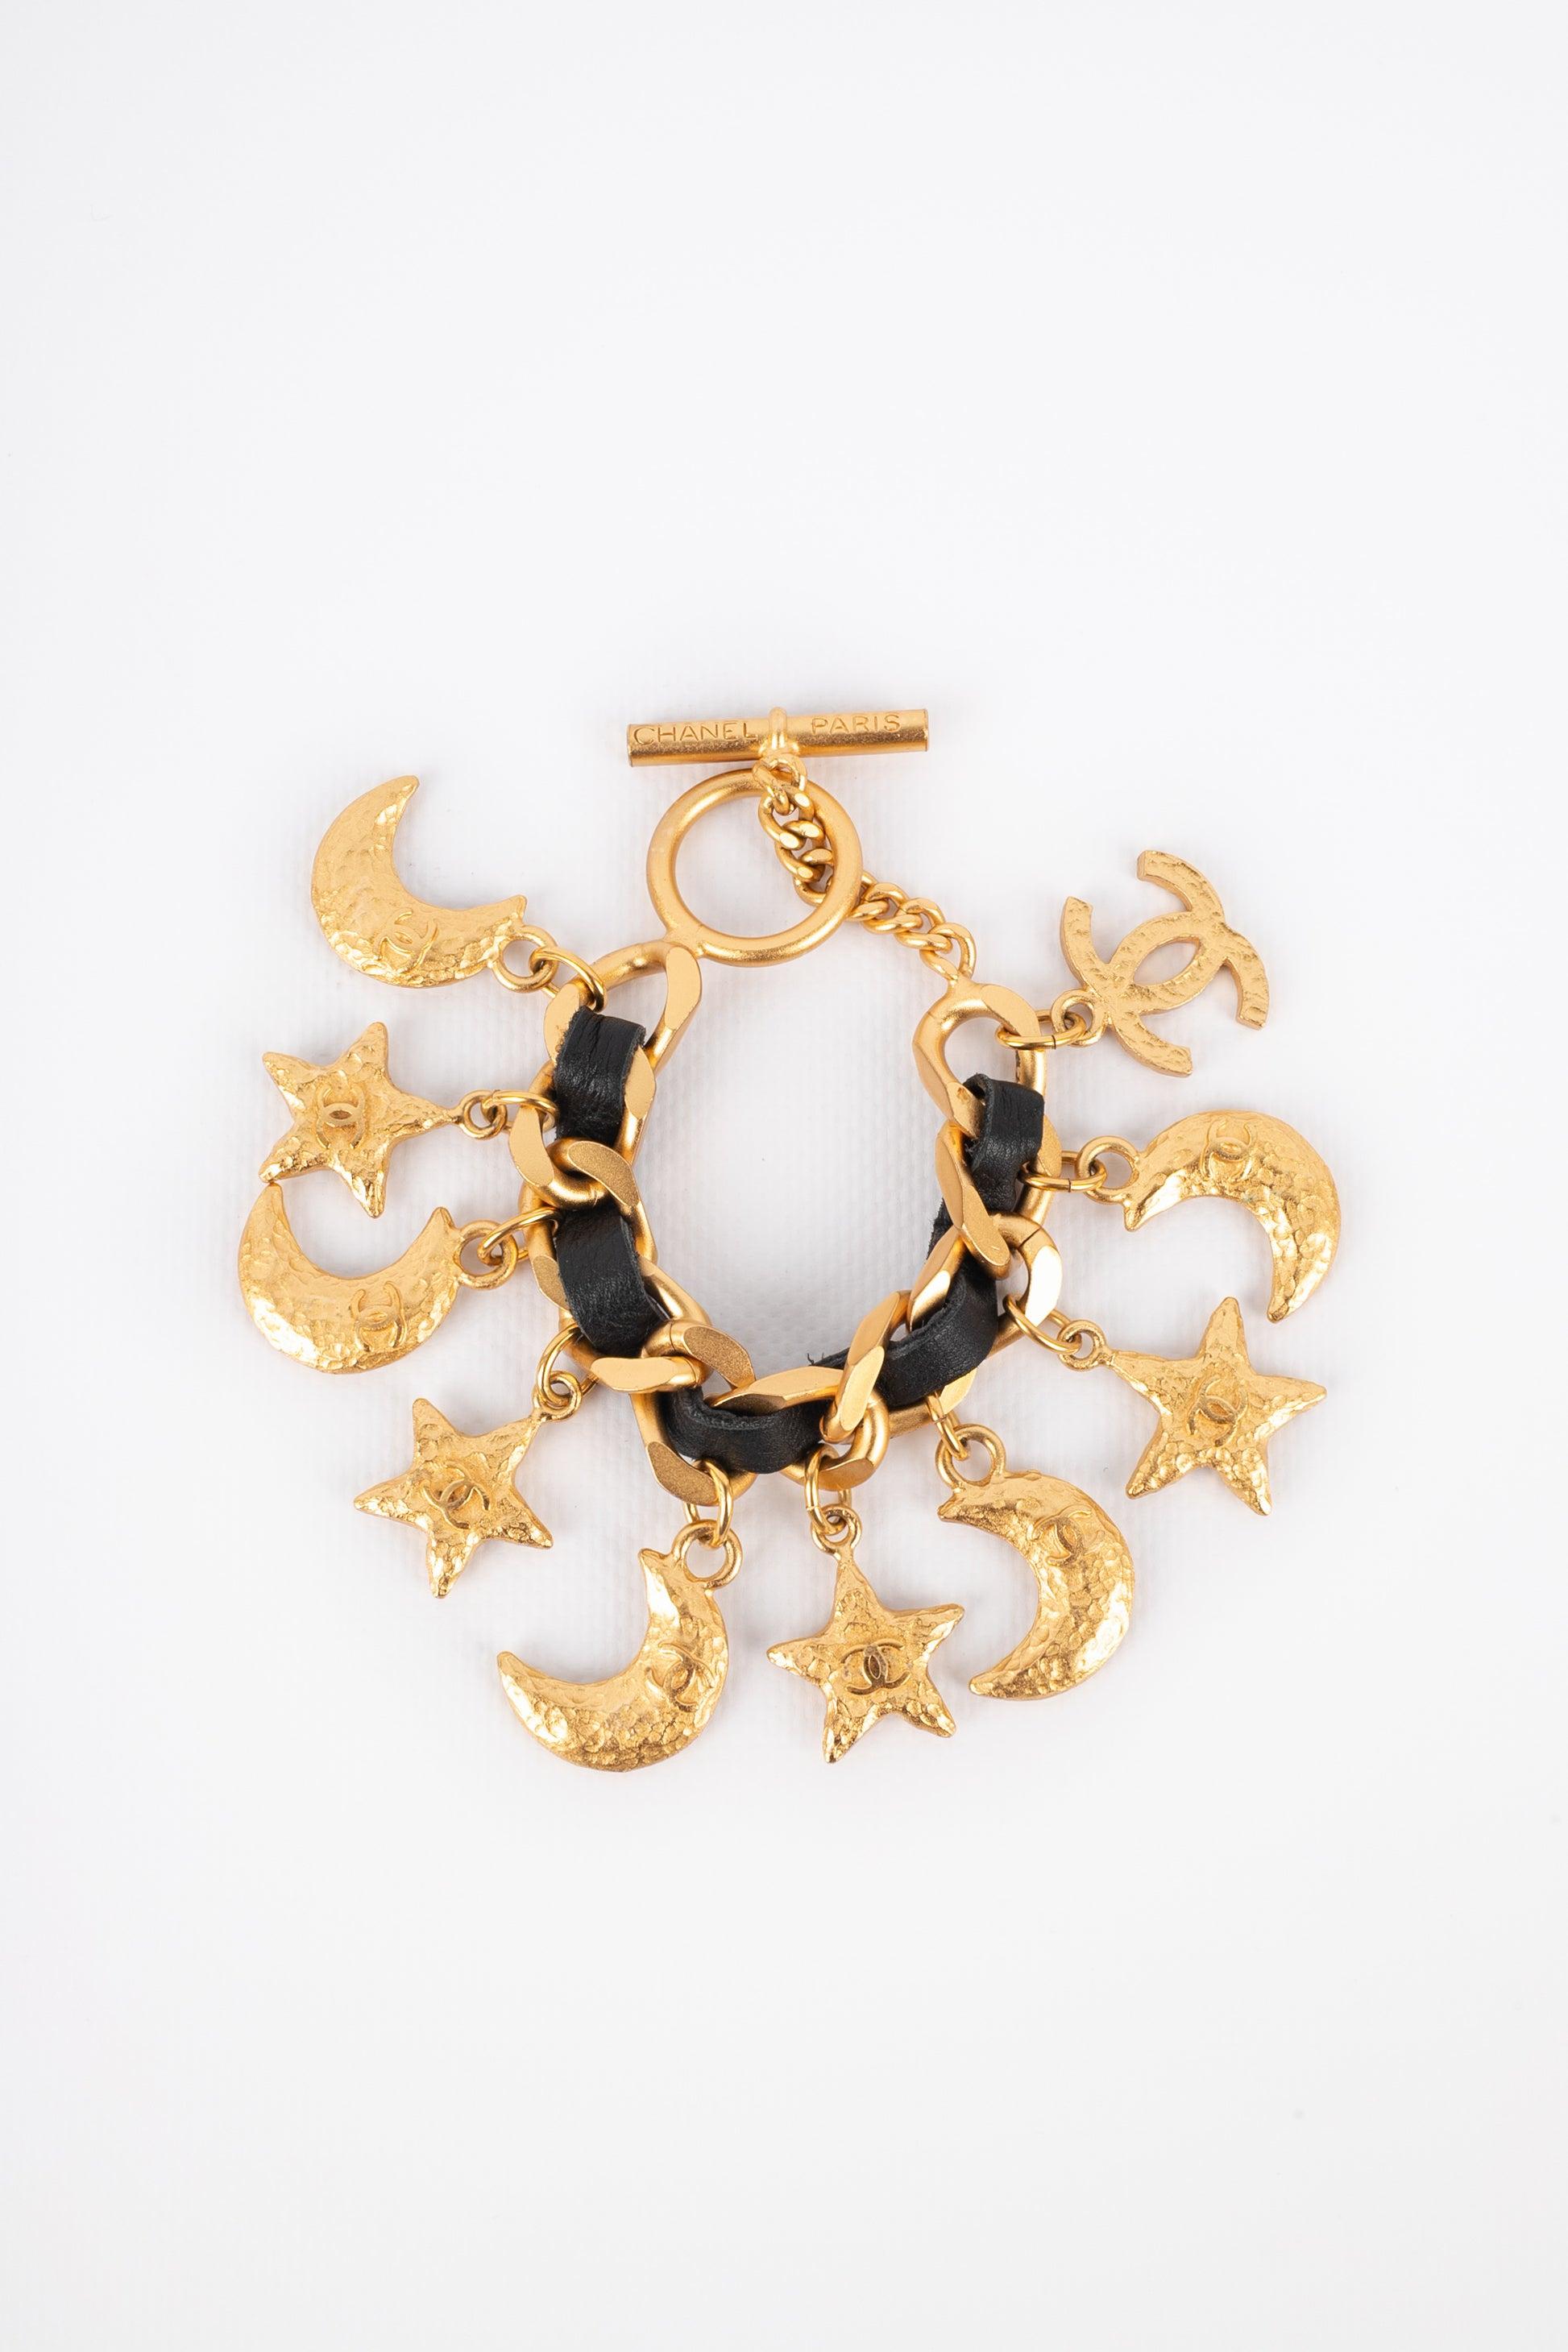 Chanel - (Made in France) Goldenes Metallarmband mit schwarzem Leder und Anhängern, die Sterne und Monde darstellen, zentriert mit cc-Logos. Schmuckstücke mit dem eingravierten S des Verkaufs.
 
Zusätzliche Informationen: 
Zustand: Sehr guter